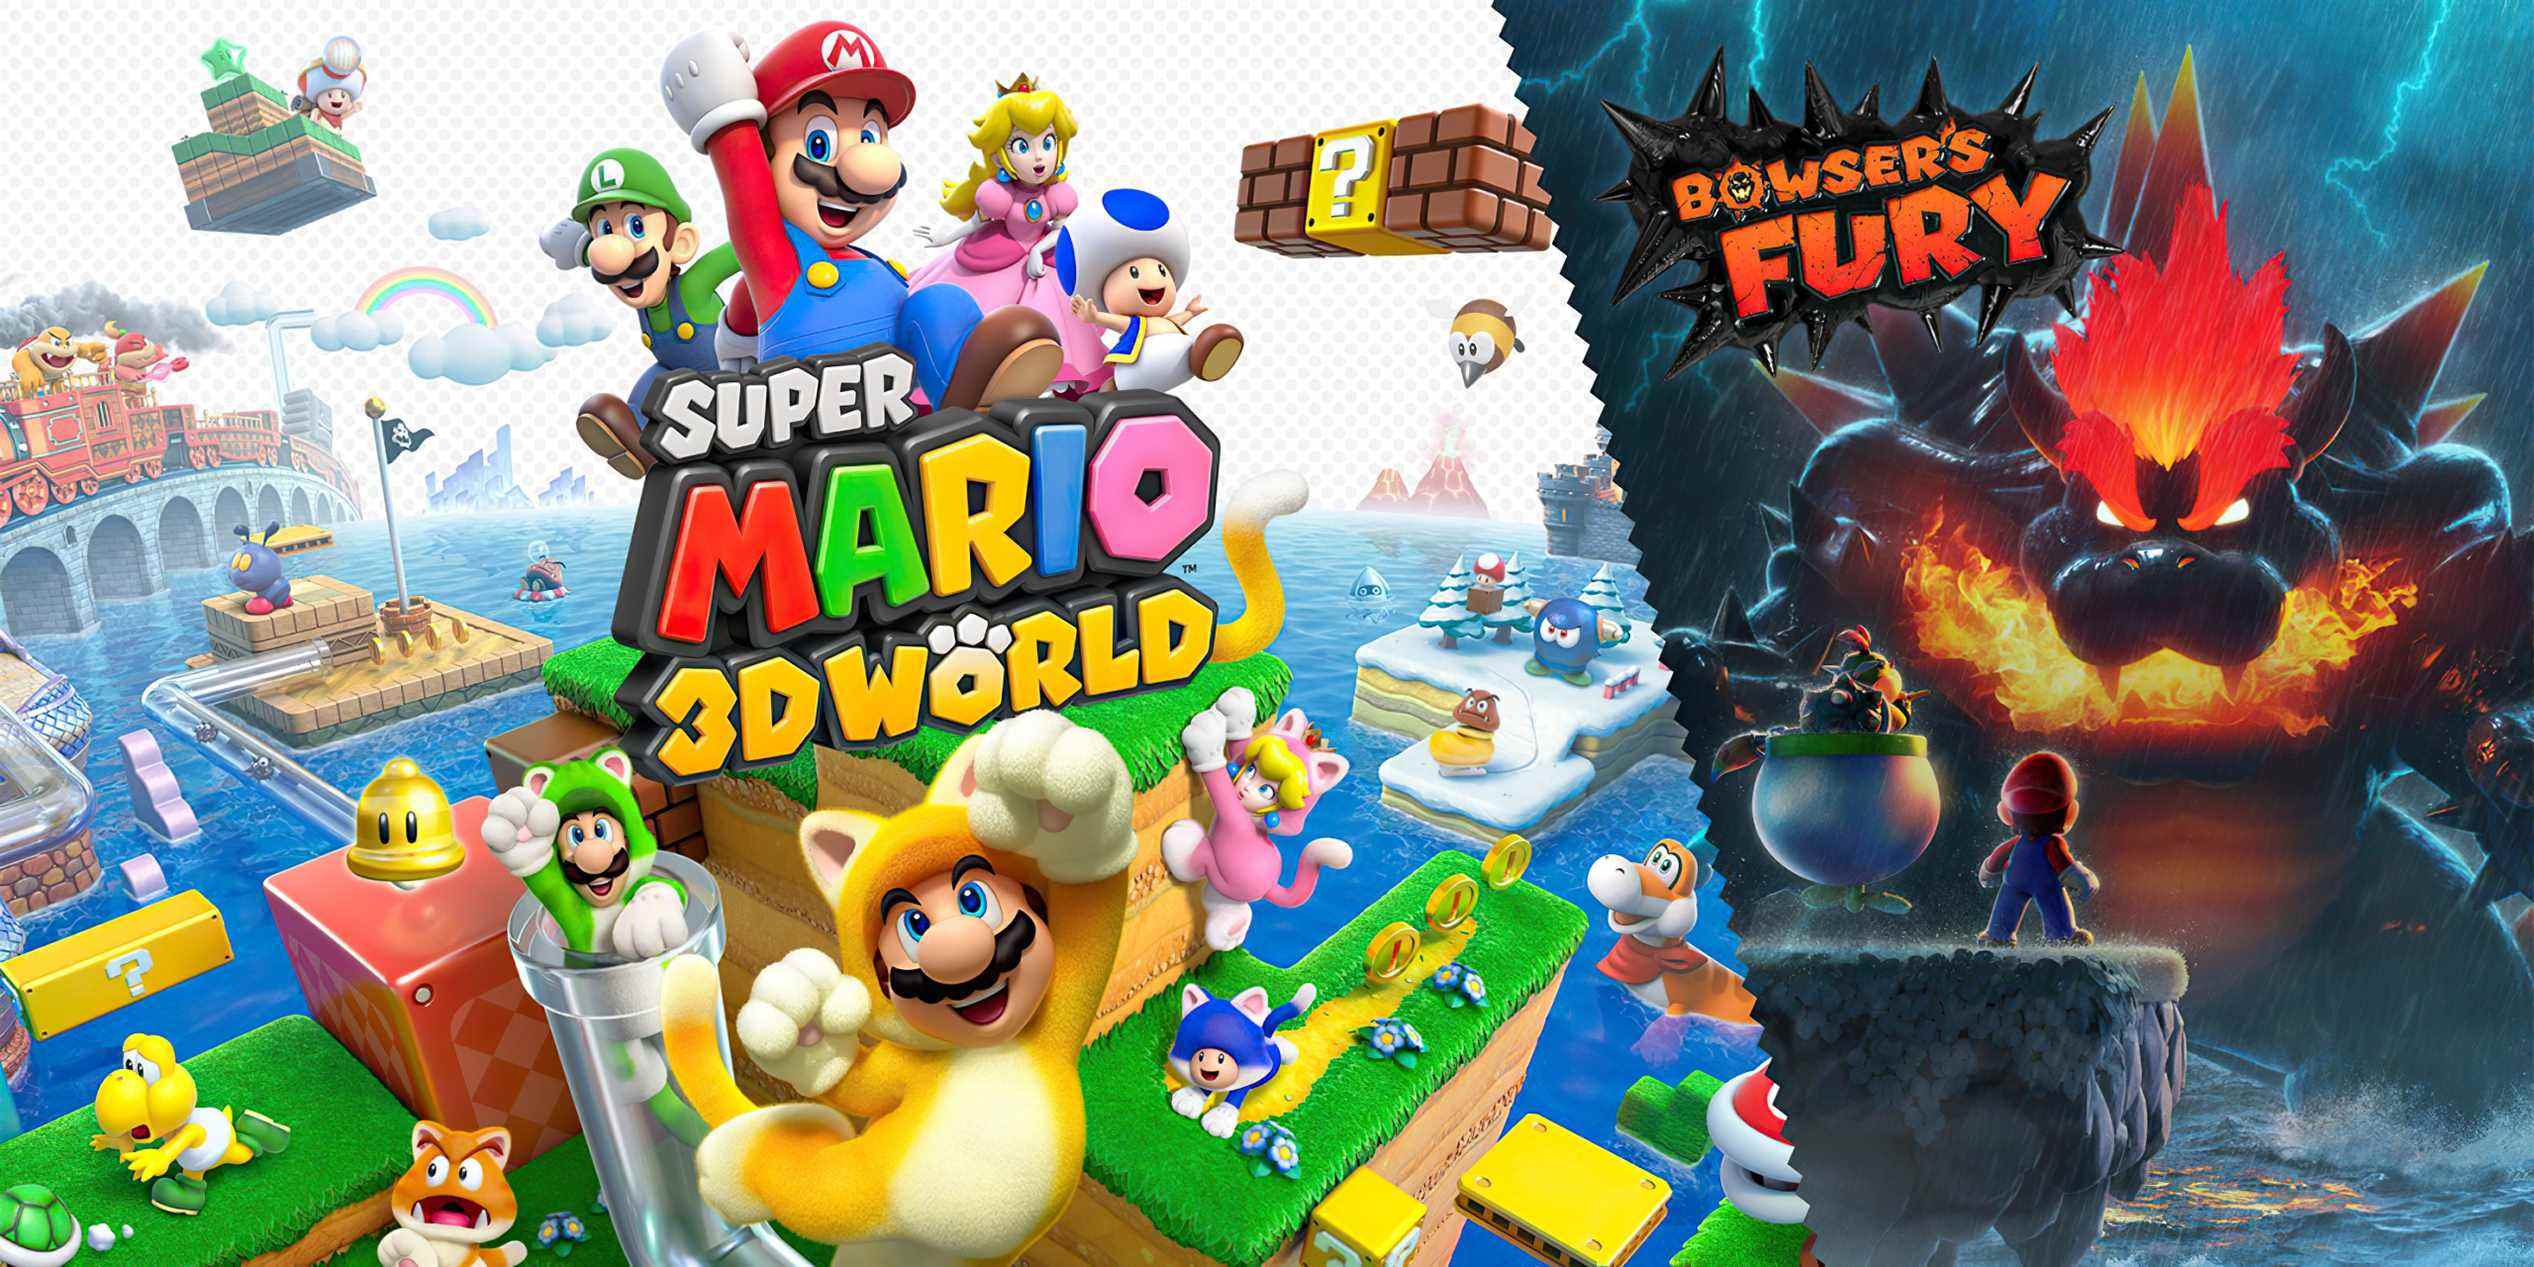 Super Mario 3D World + La fureur de Bowser